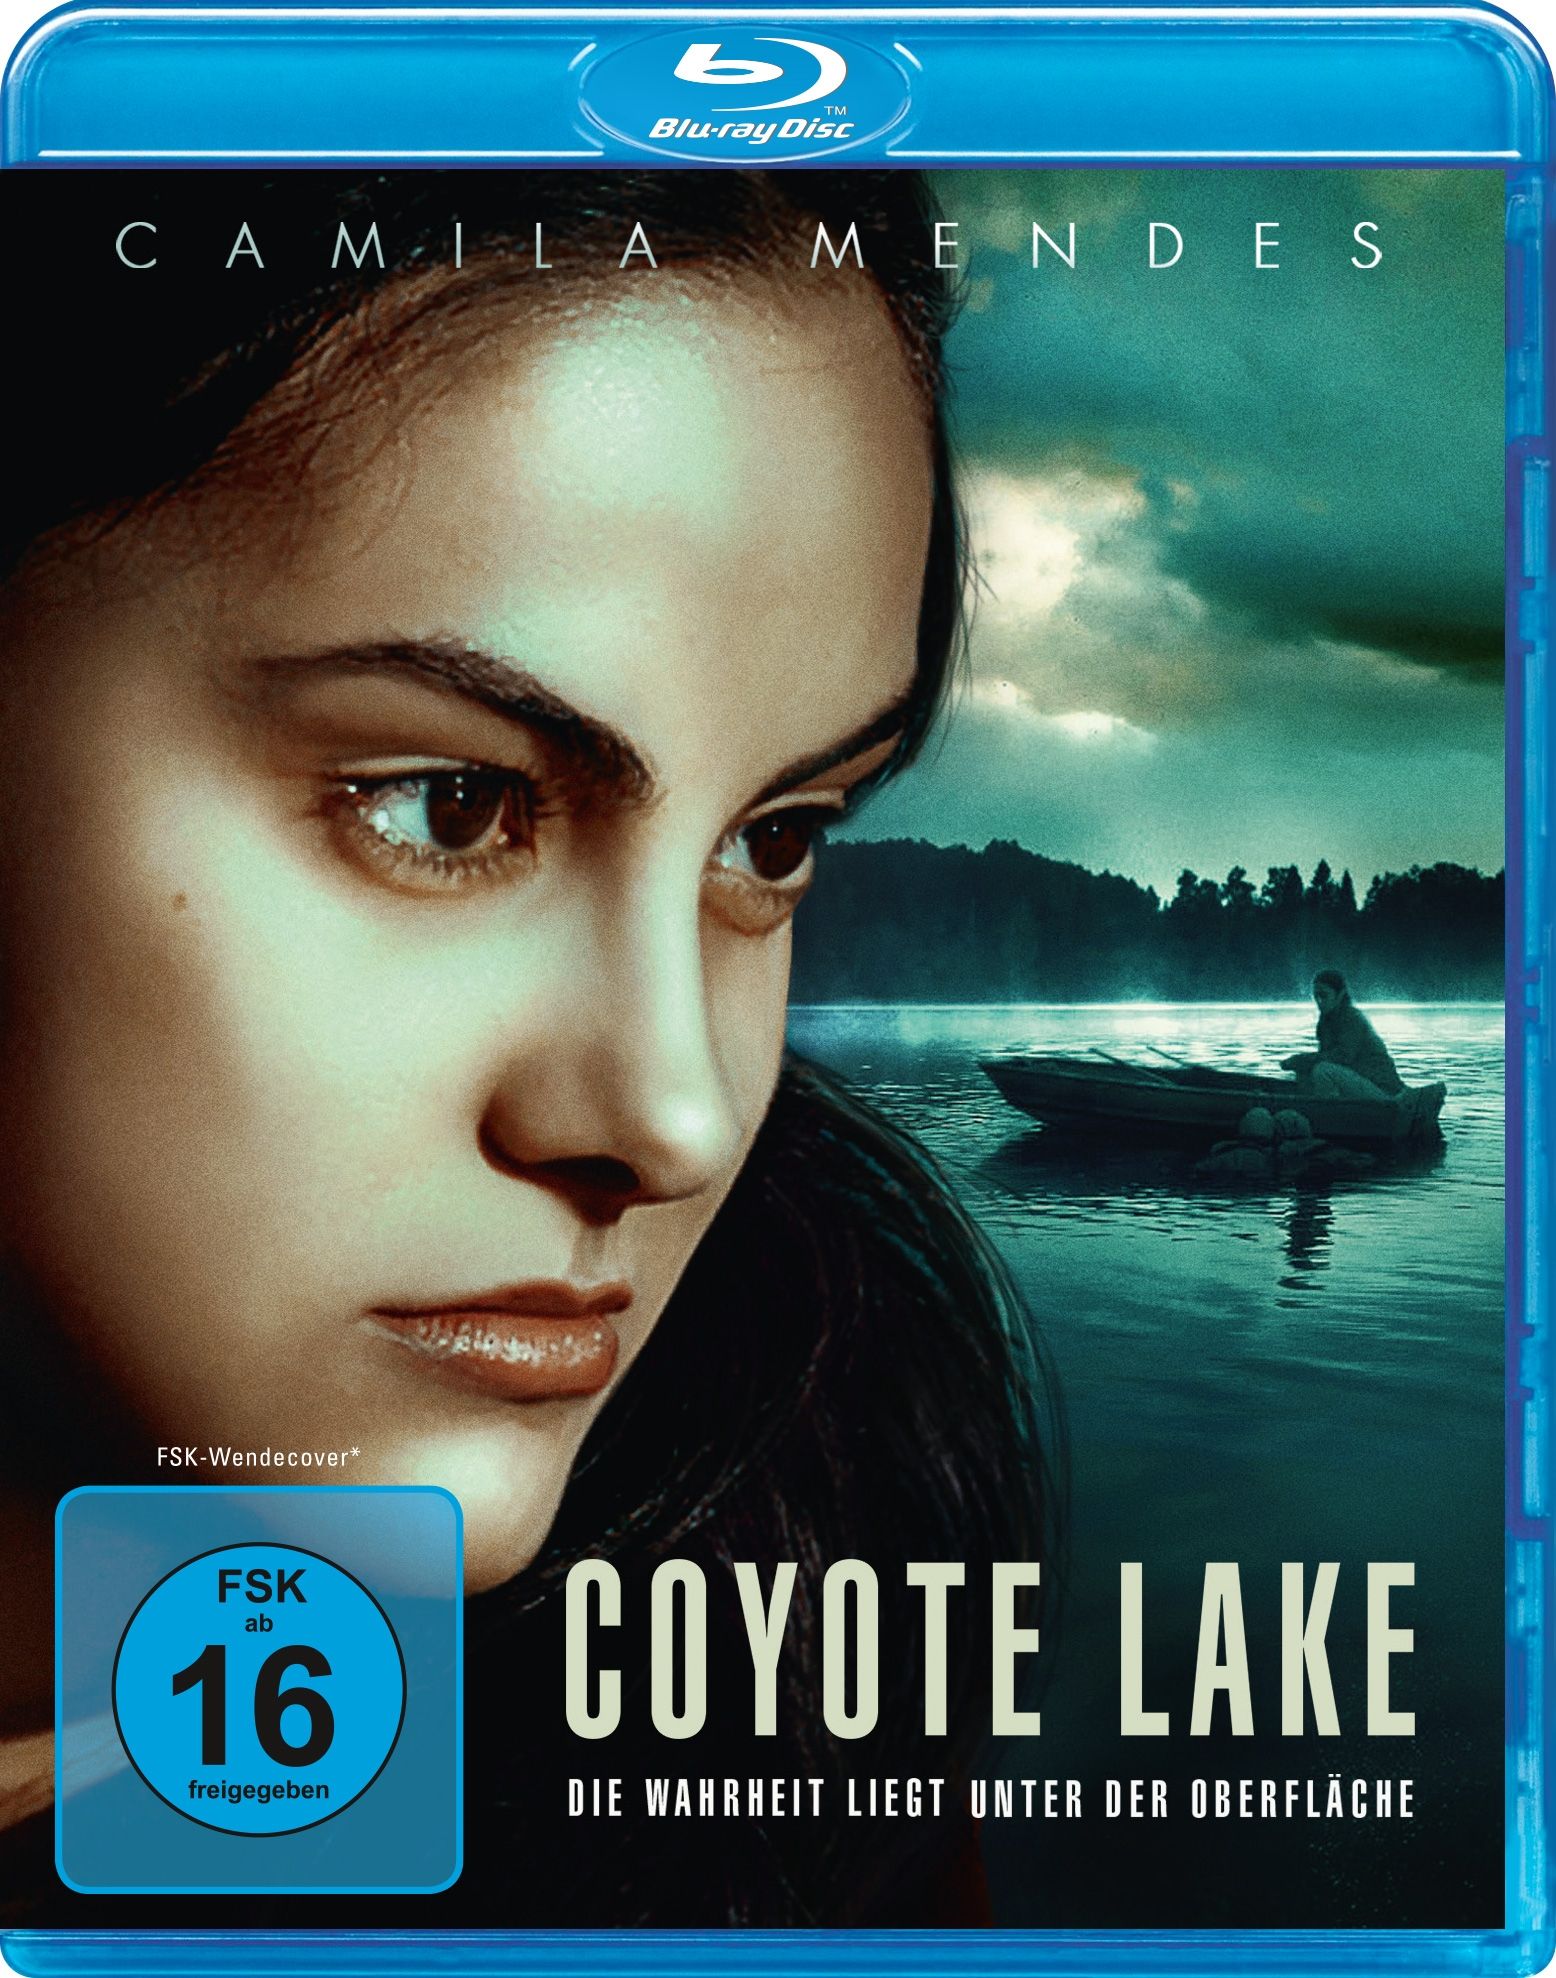 Coyote Lake - Die Wahrheit liegt unter der Oberfläche! (BLURAY)